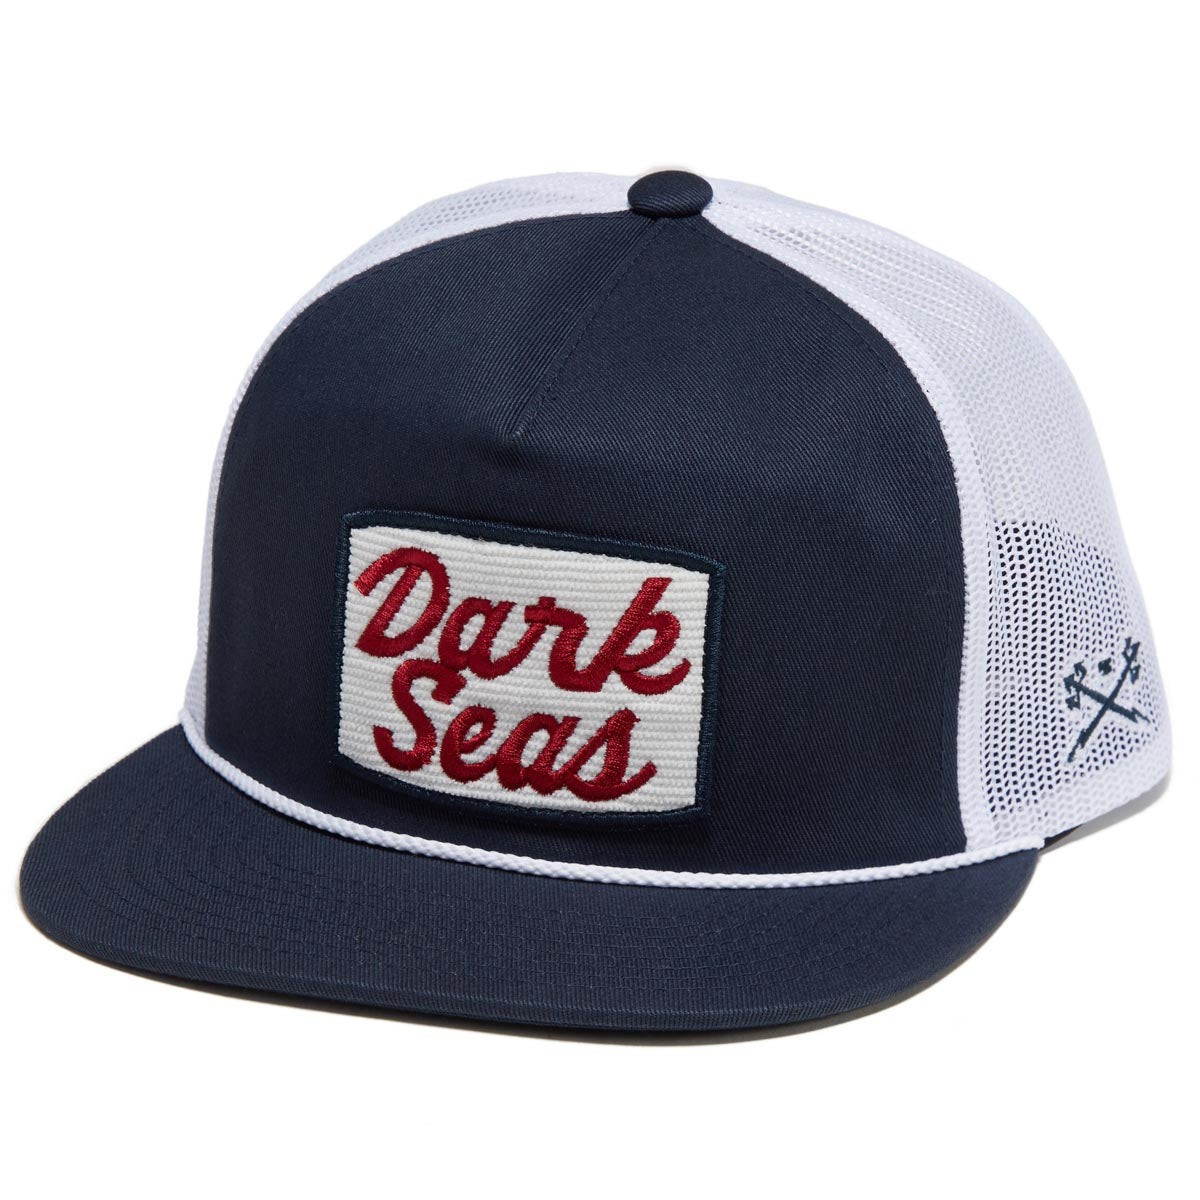 Dark Seas Rhodes Hat - Navy/White image 1